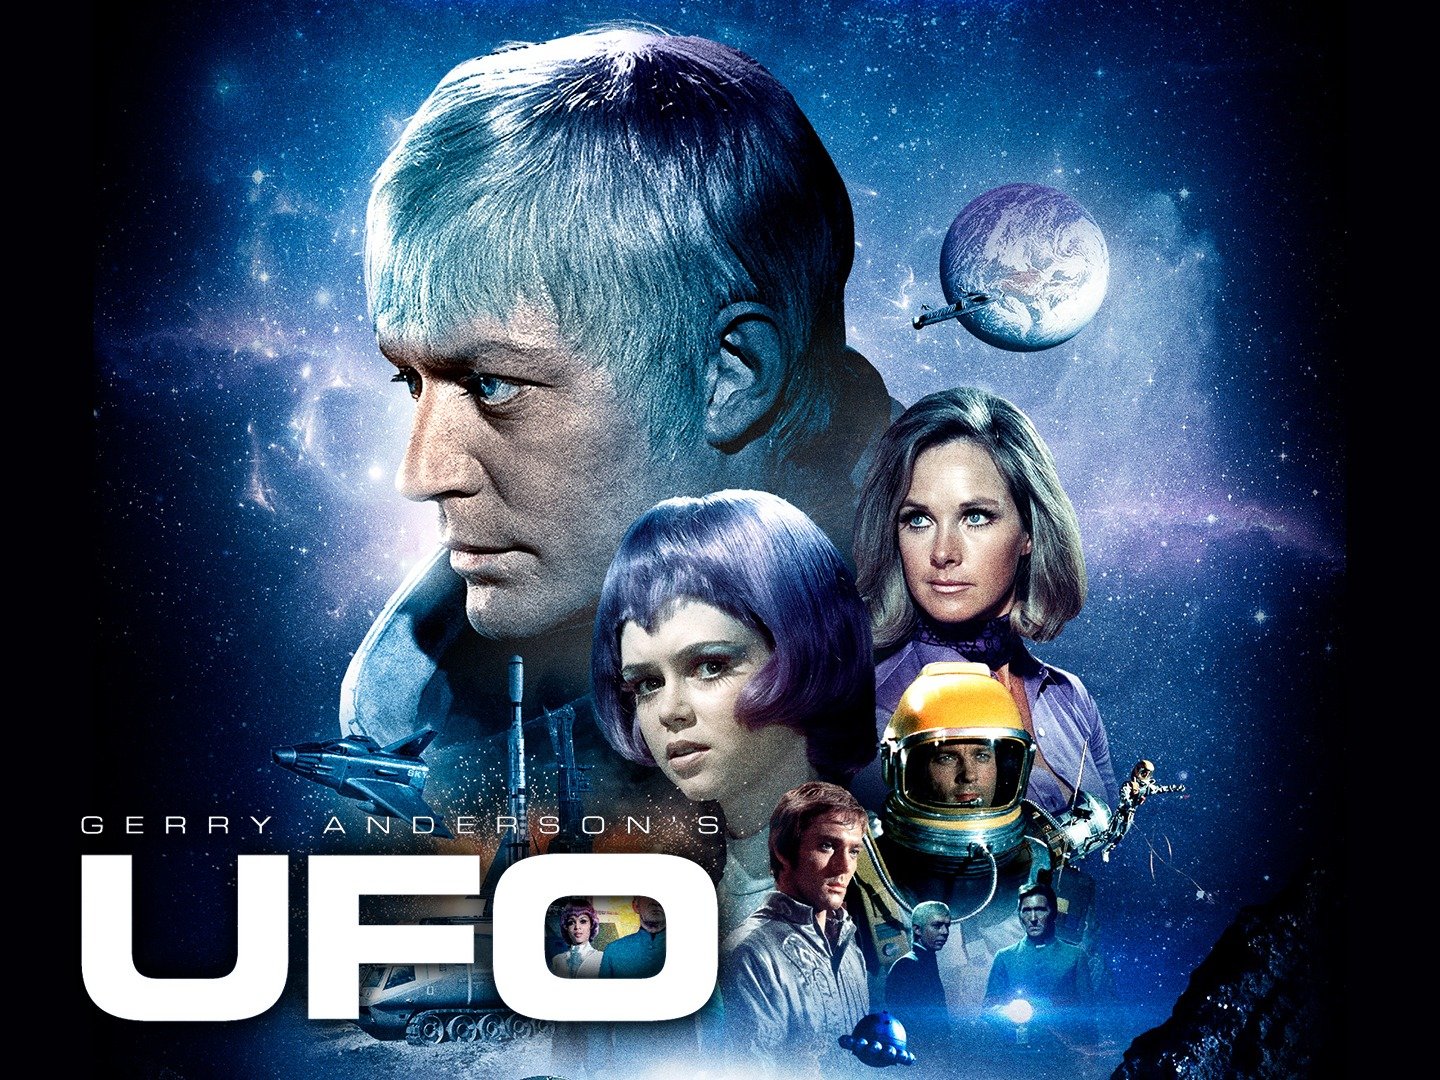 Gerry Anderson's UFO